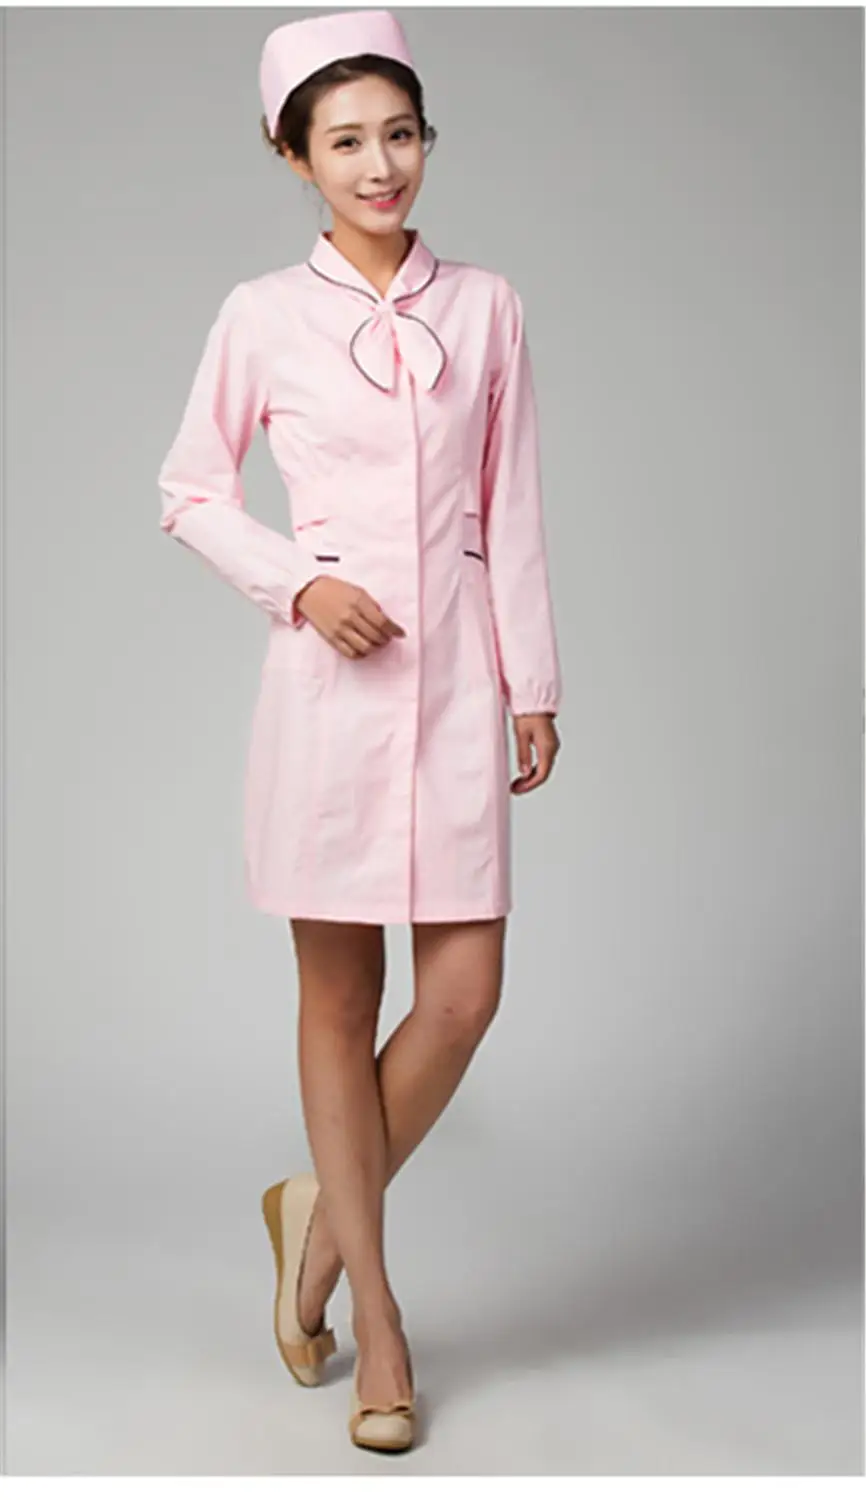 Униформа медсестры больничное лабораторное пальто скрабы для женщин с коротким/длинным рукавом медицинское платье uniformes clinicos медицинская одежда - Цвет: Long sleeve pink